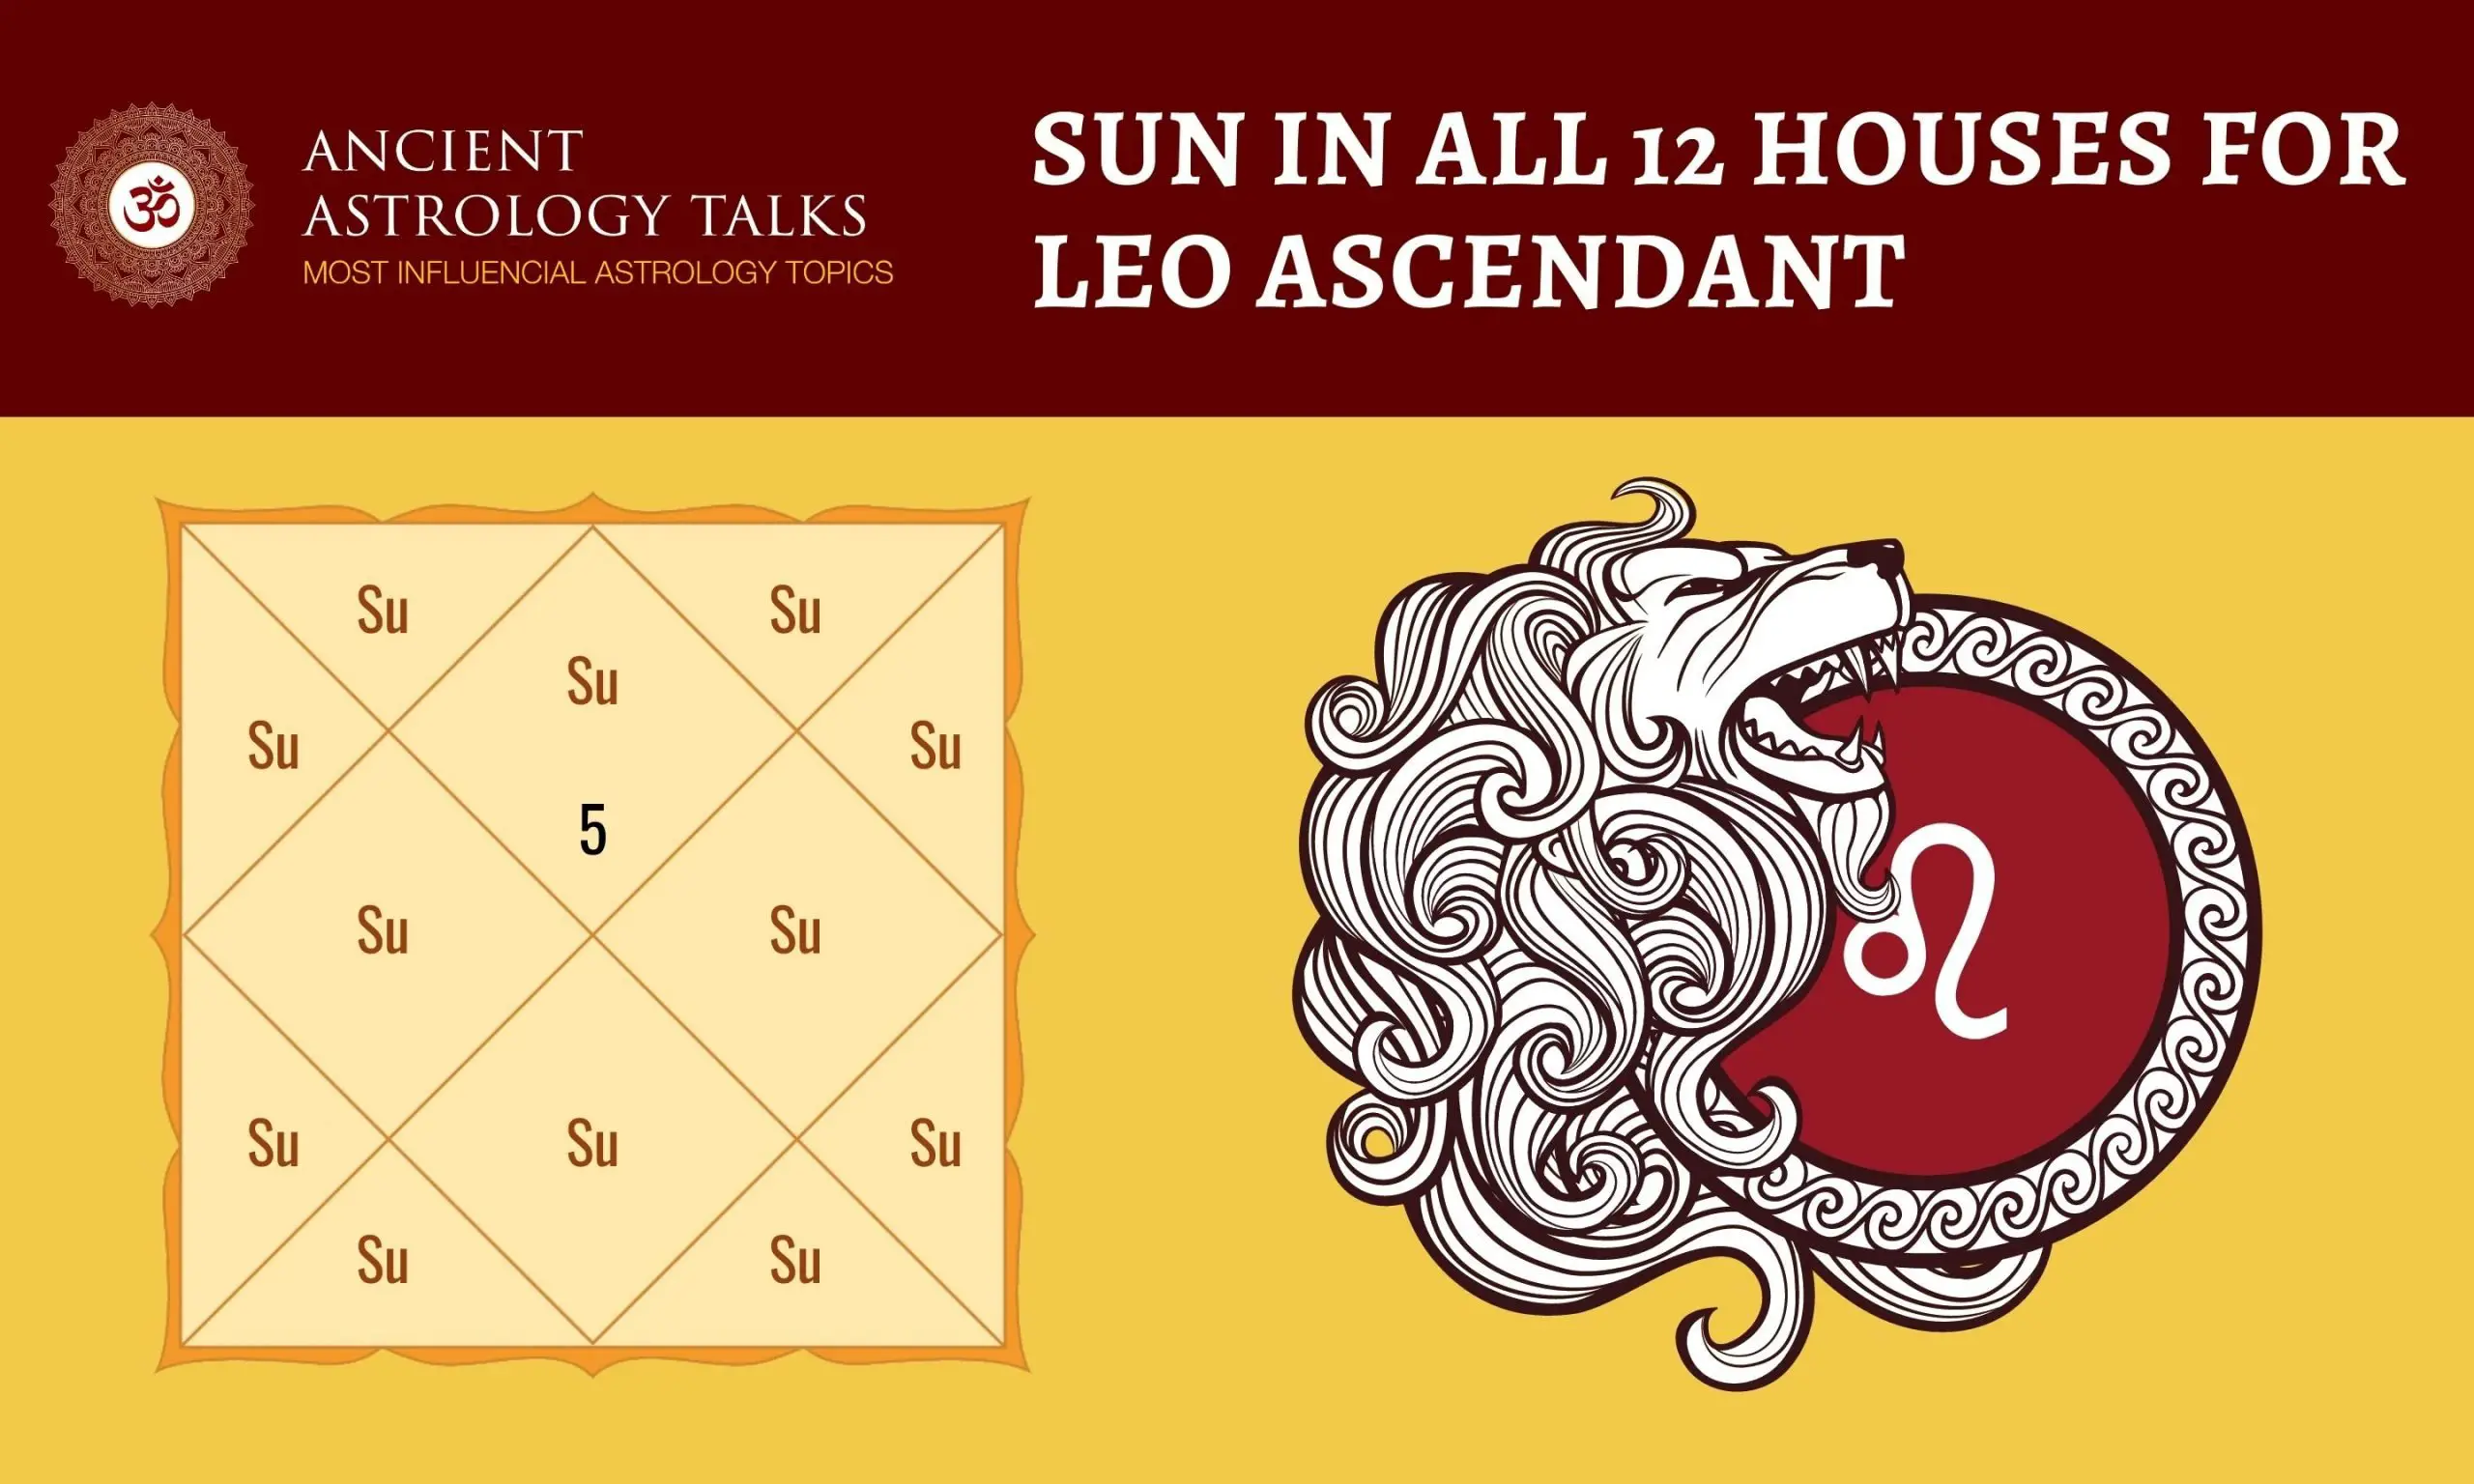 Sun in all 12 houses for Leo Ascendant